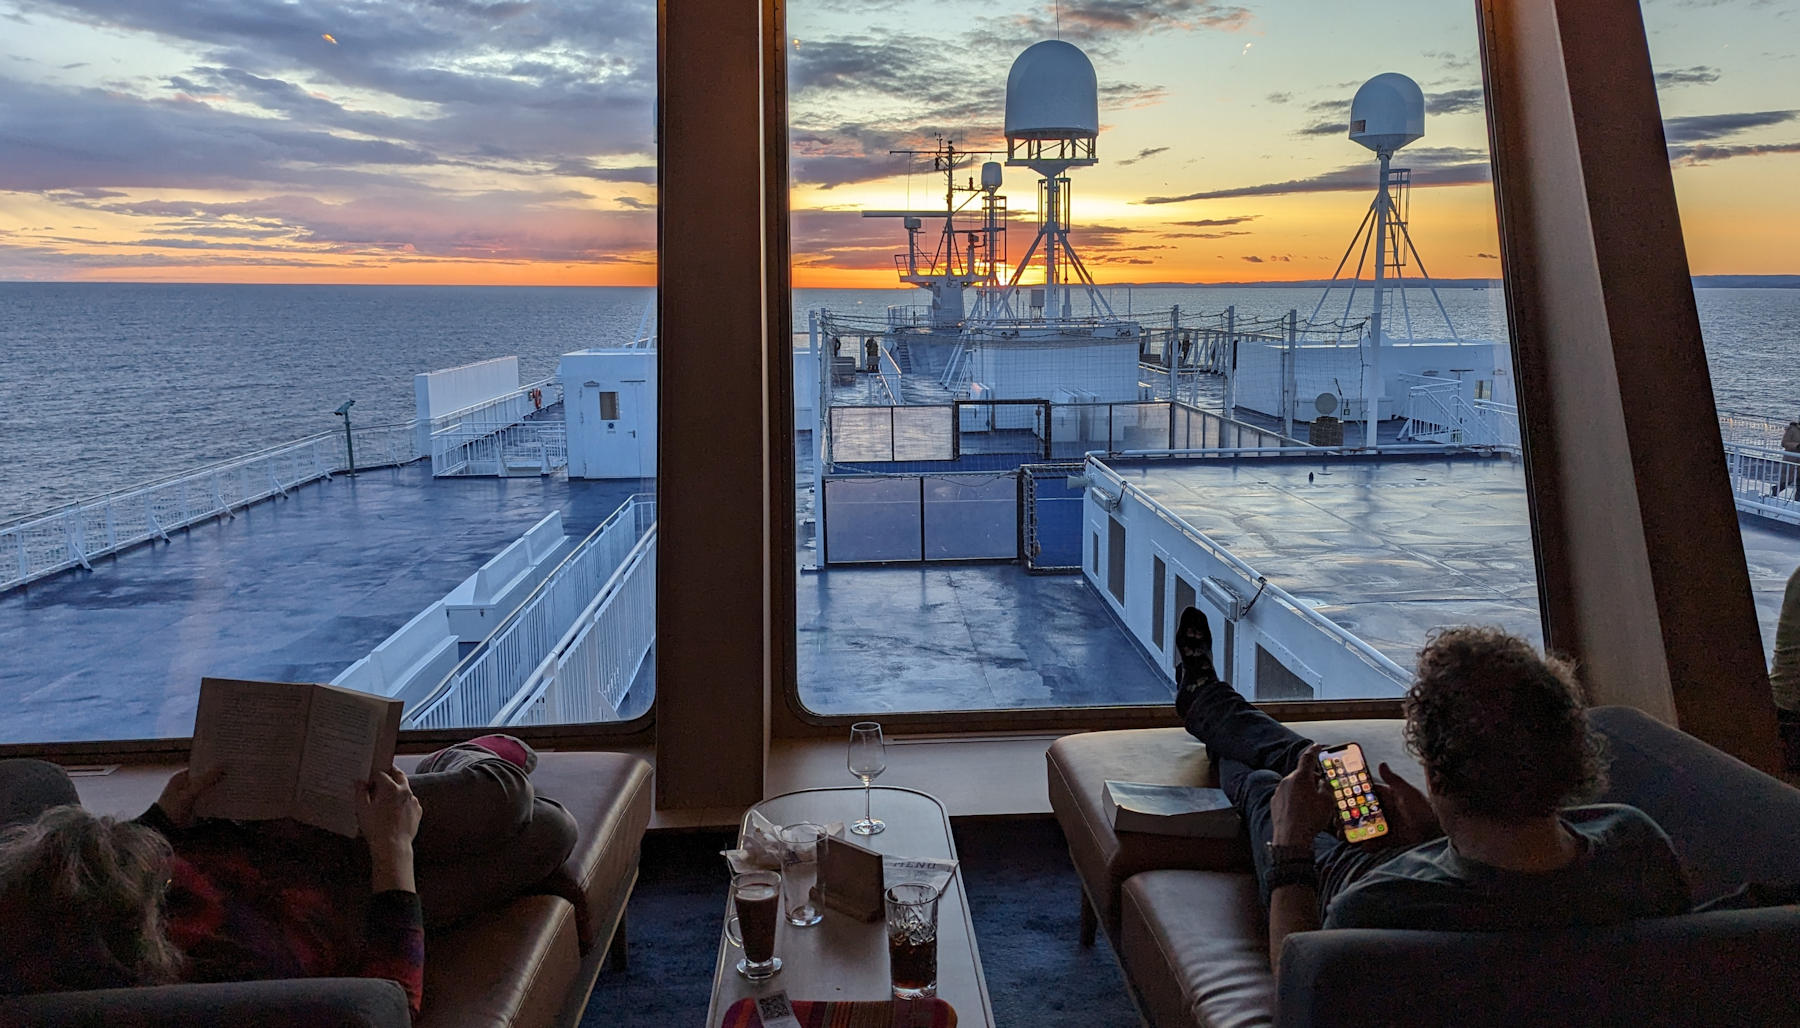 Sonnenuntergang an Bord der Norröna von der Laterna Bar Deck 10 aus betrachtet